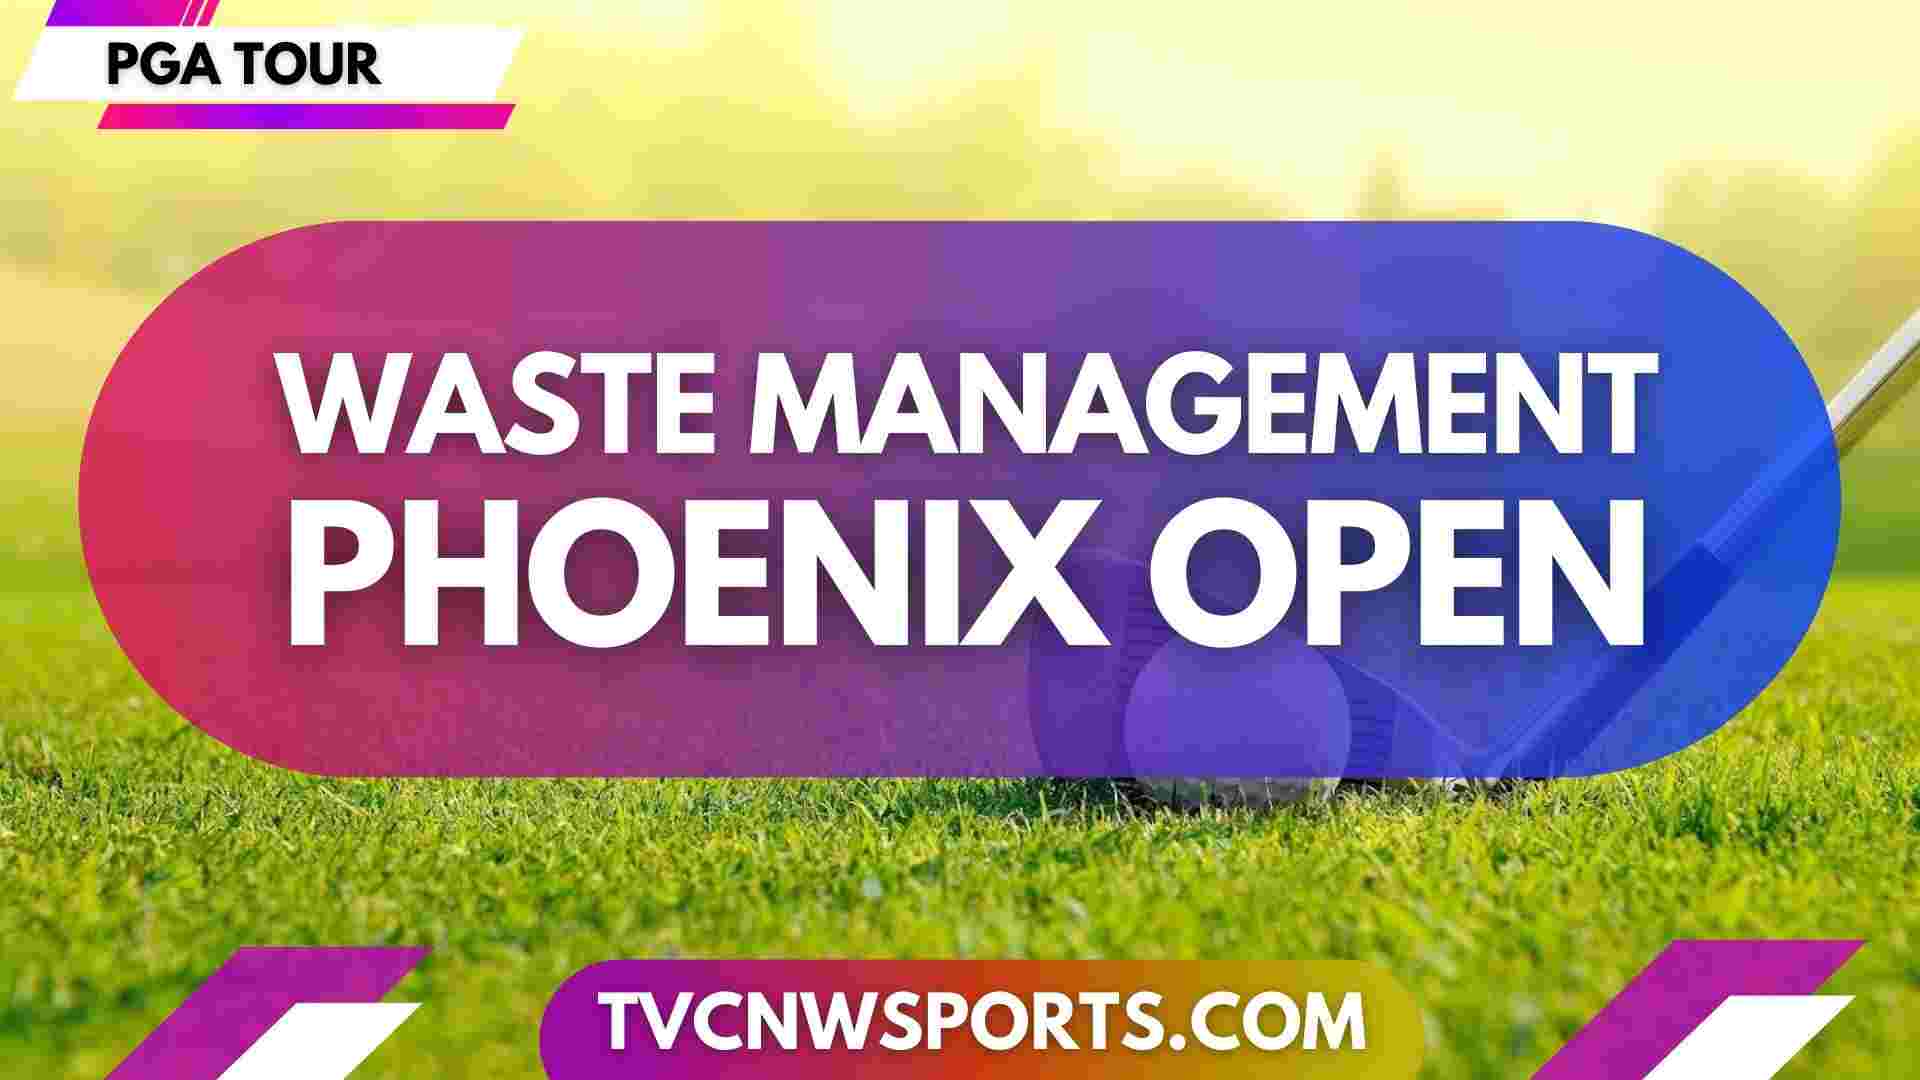 WM Phoenix Open Golf PGA